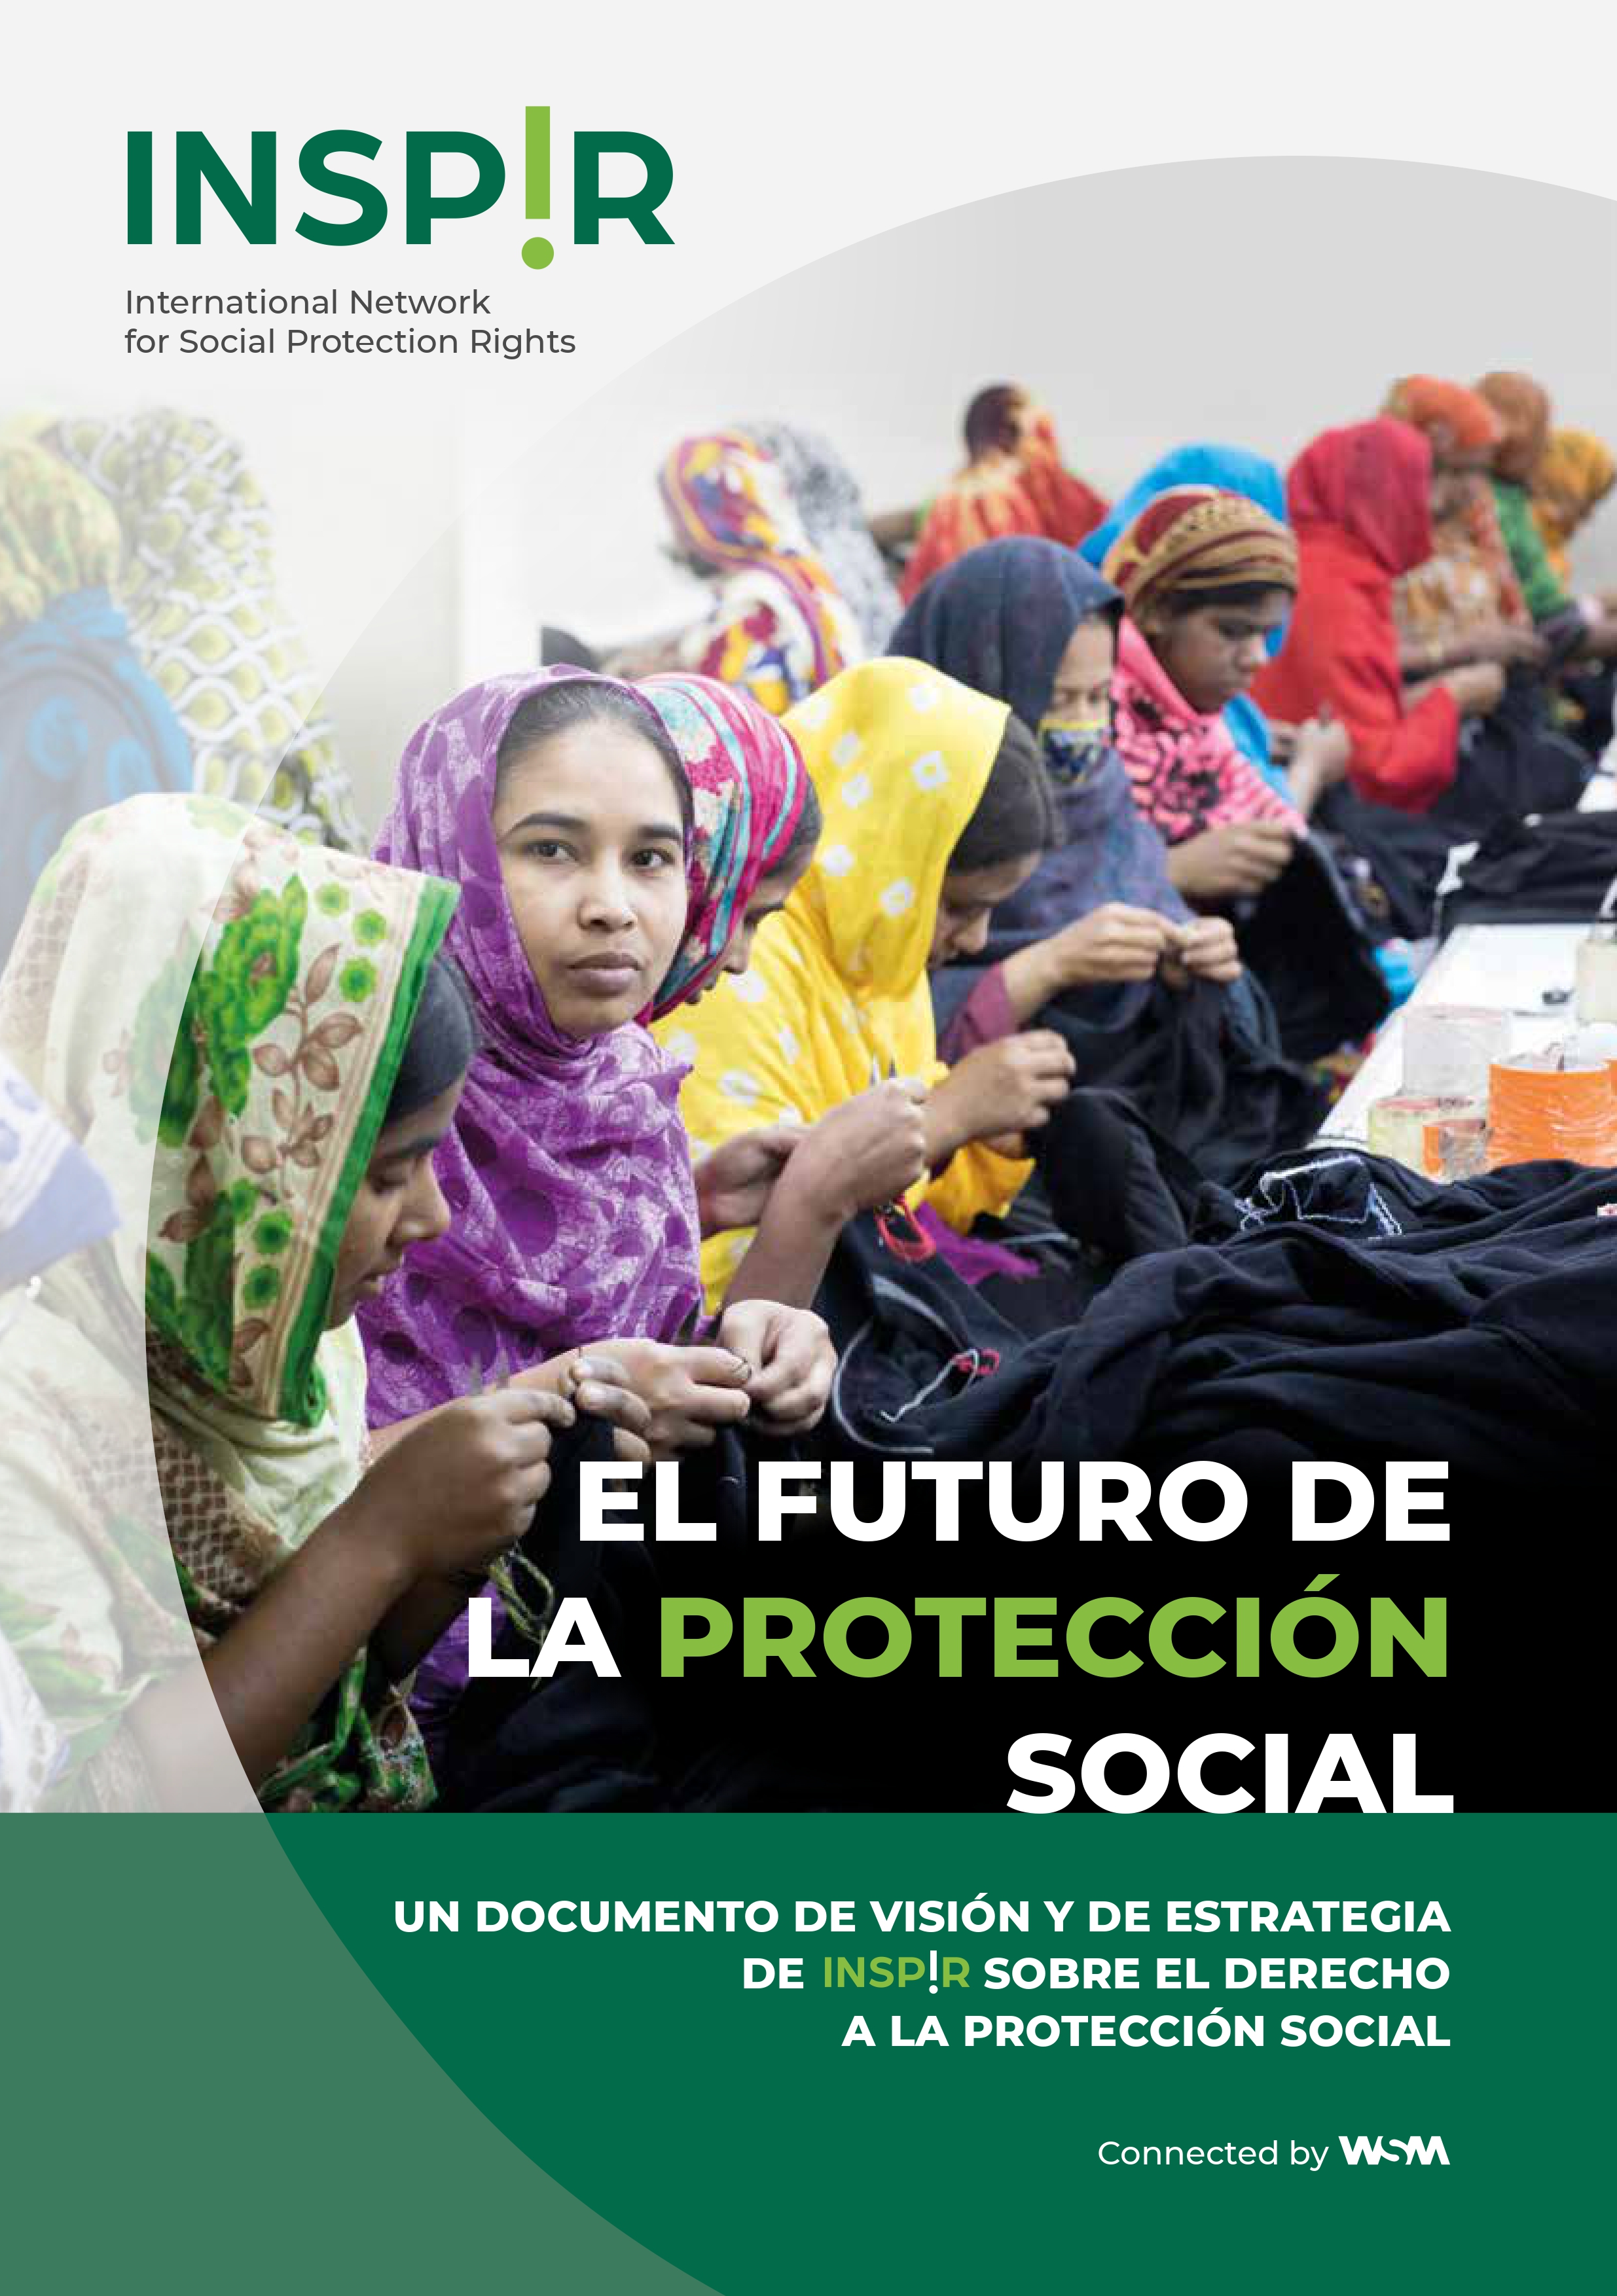 Folleto sobre la visión de la protección social del INSP!R